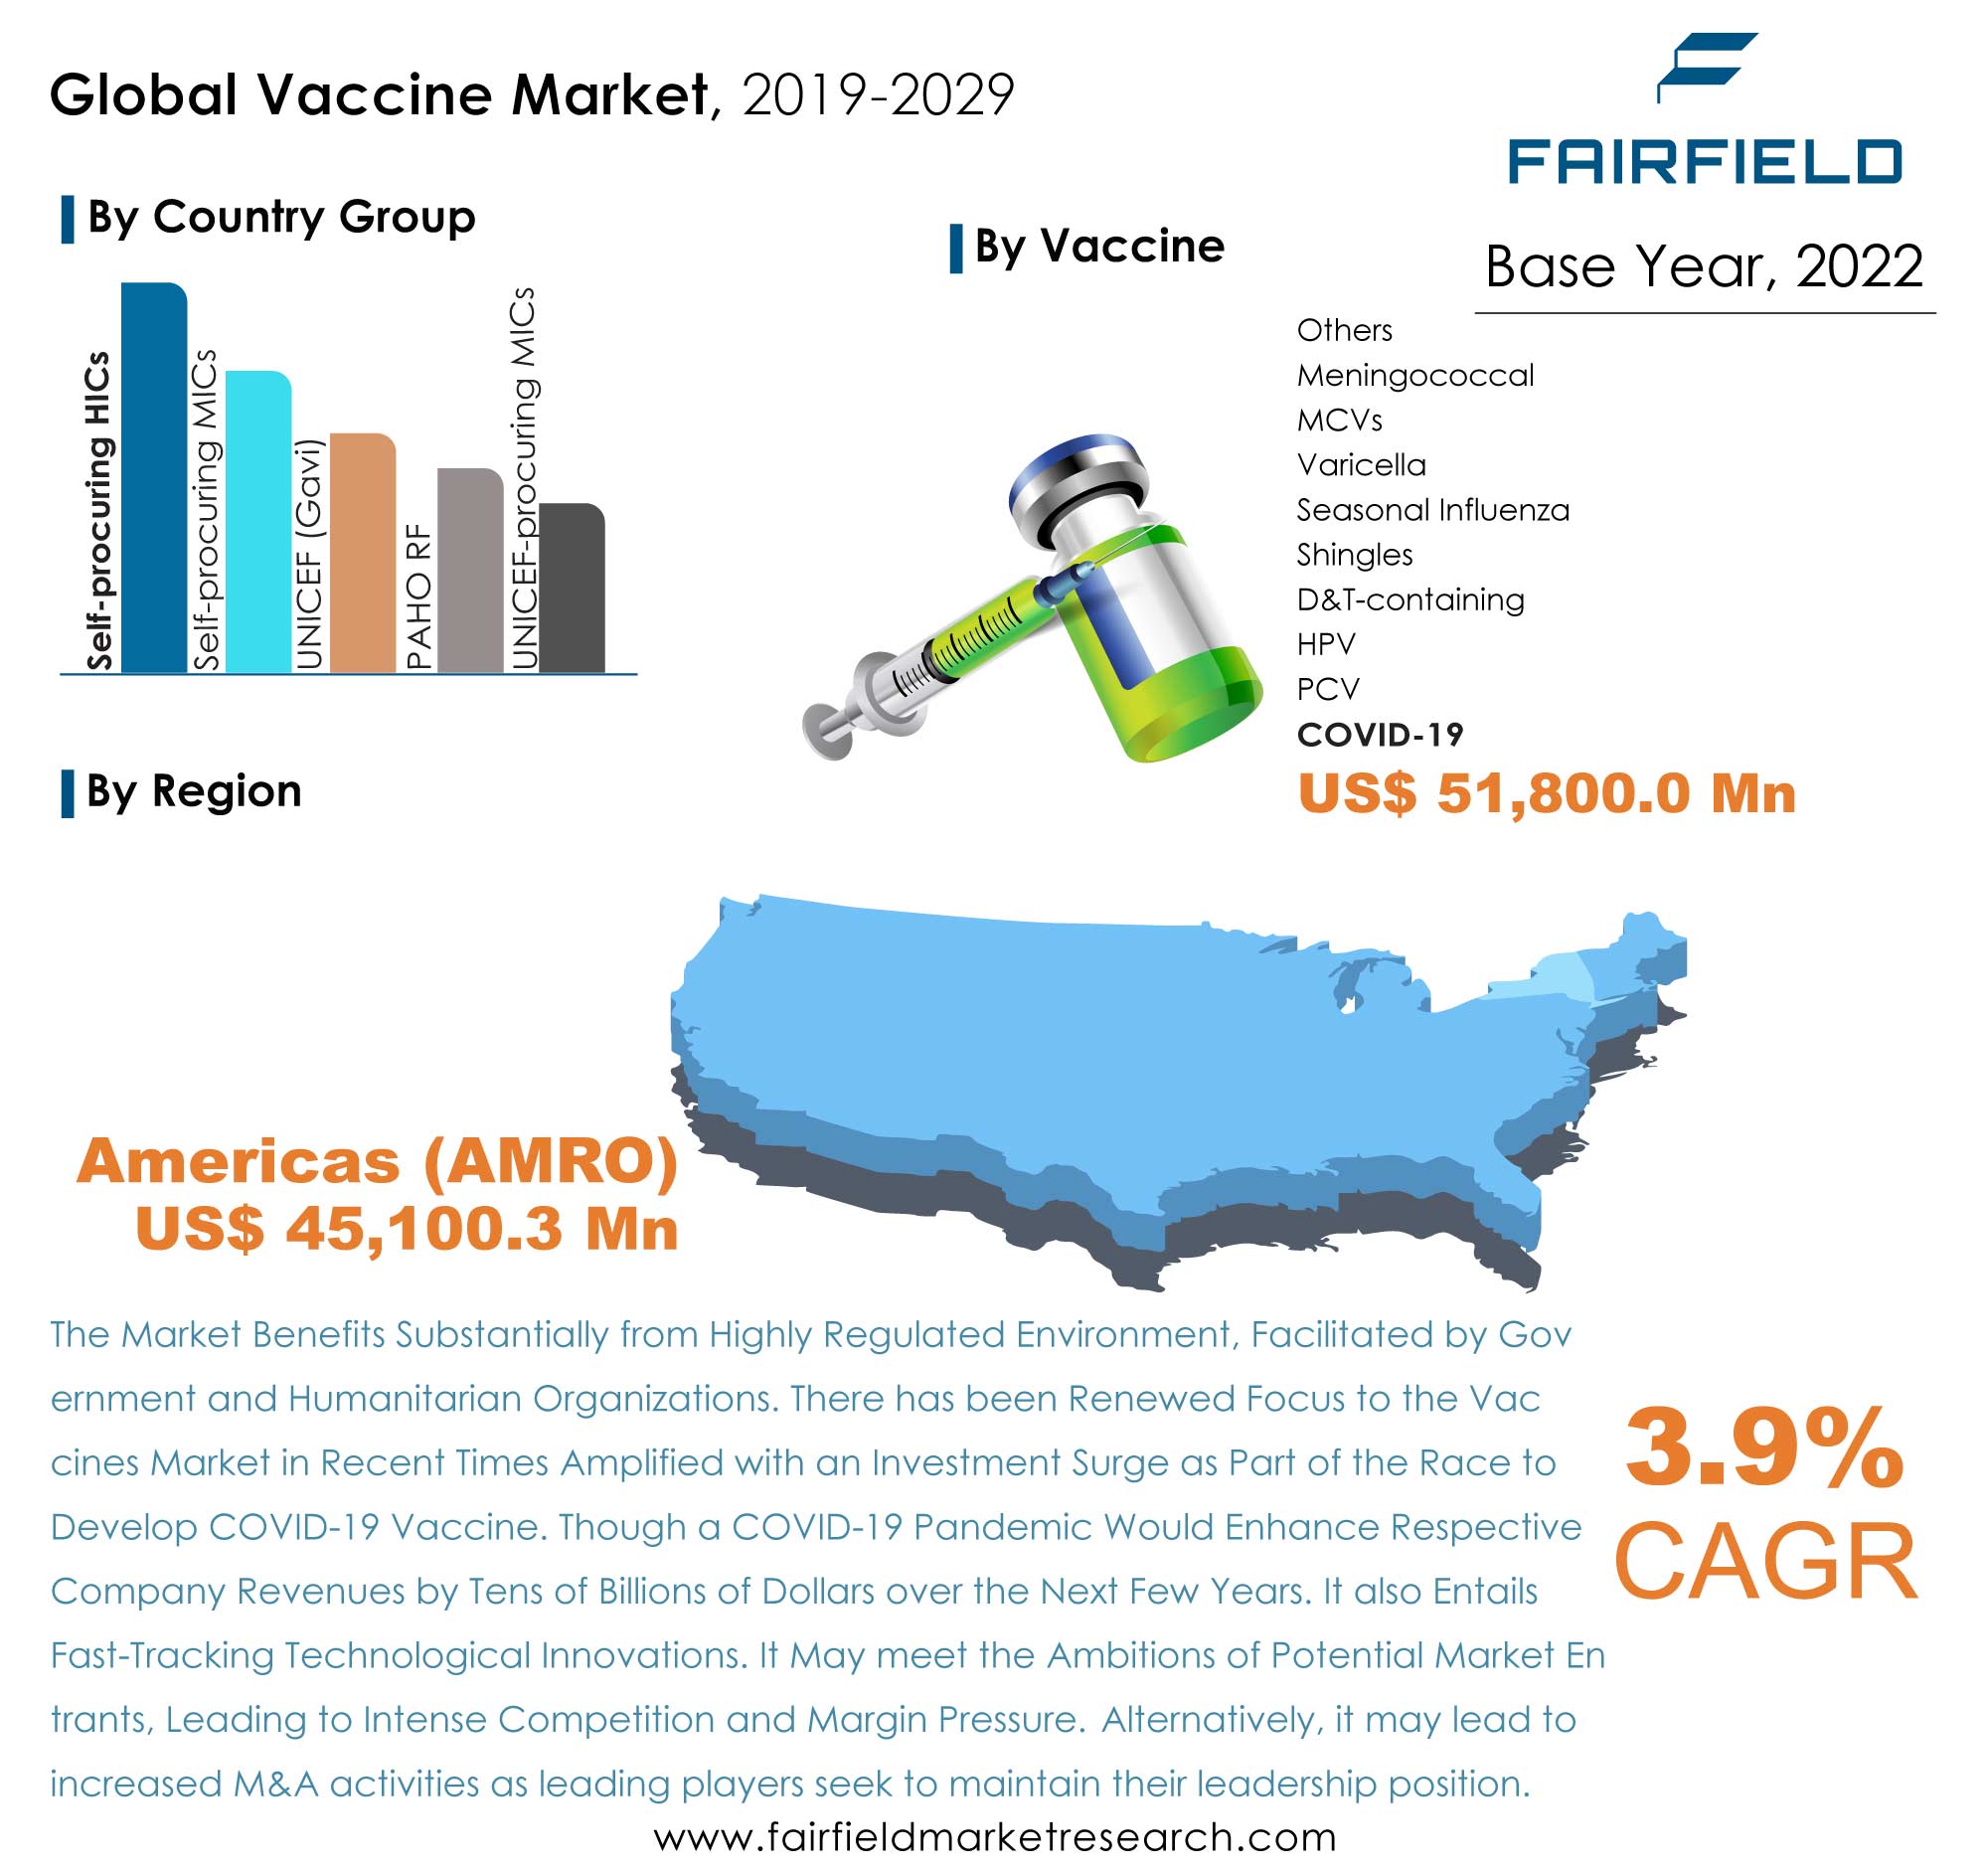 Vaccines Market